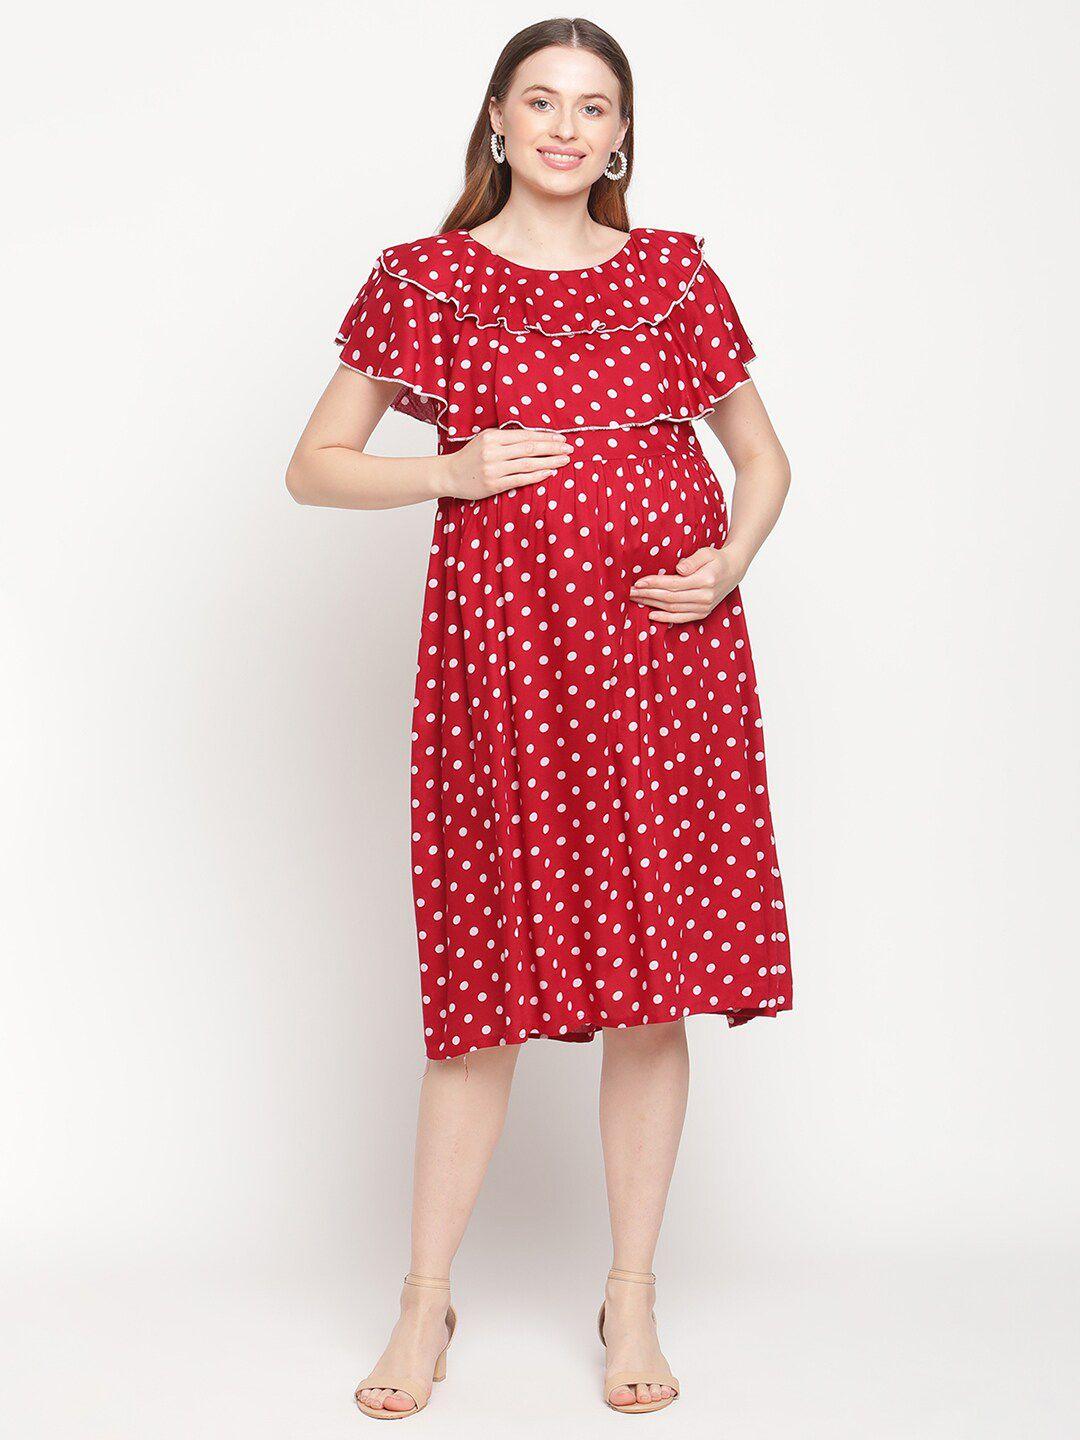 moms maternity red & white maternity dress